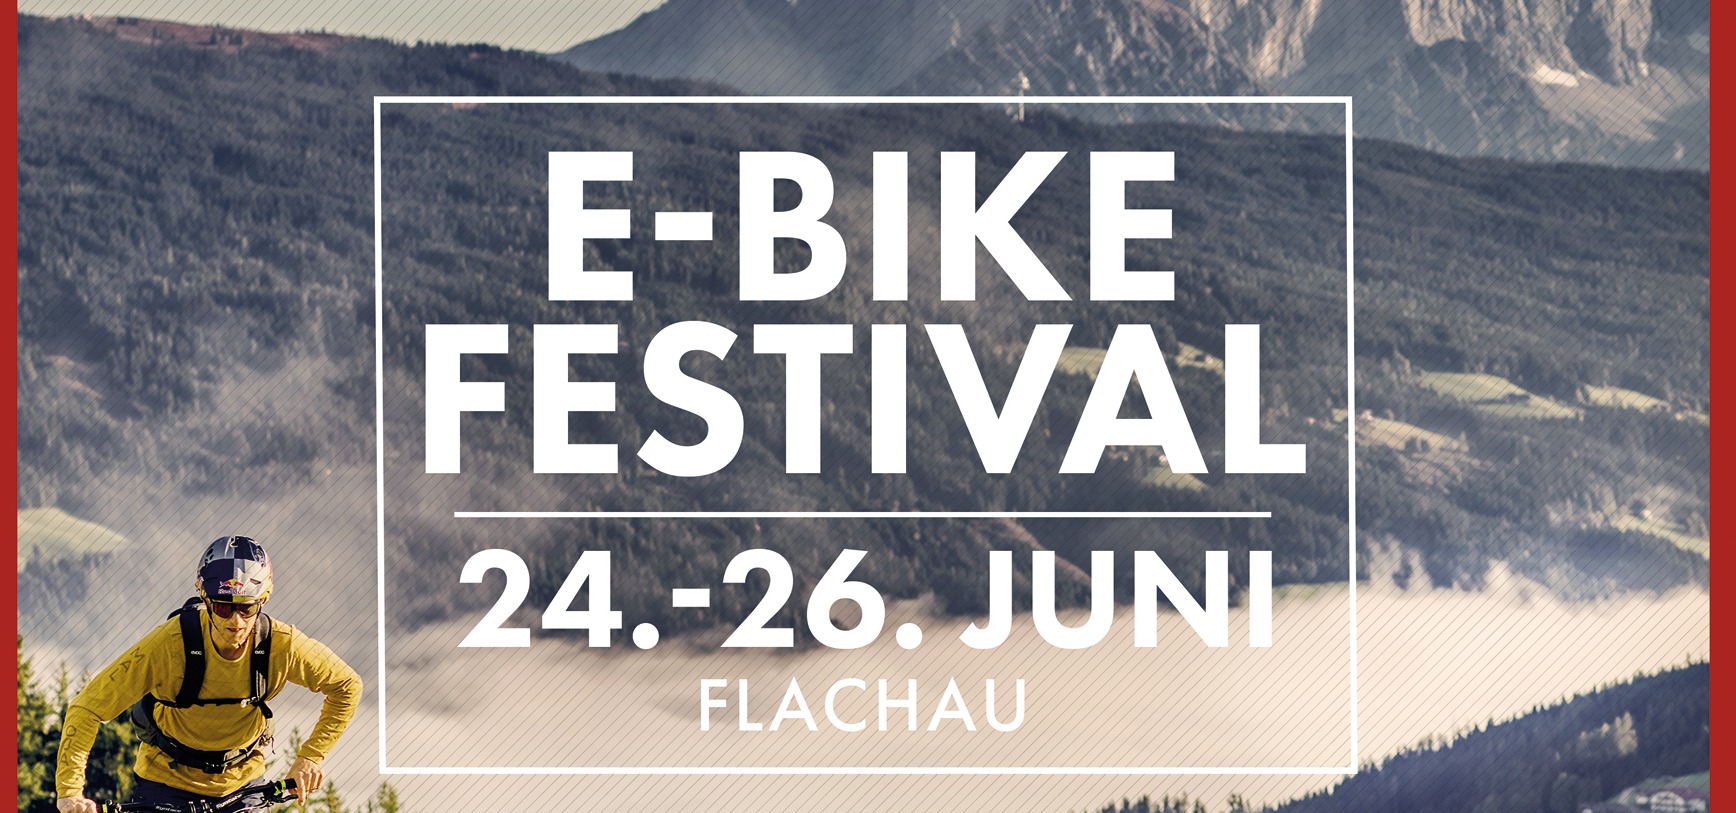 E-Bike Event des jahres E-Bike-Festival Flachau Juni